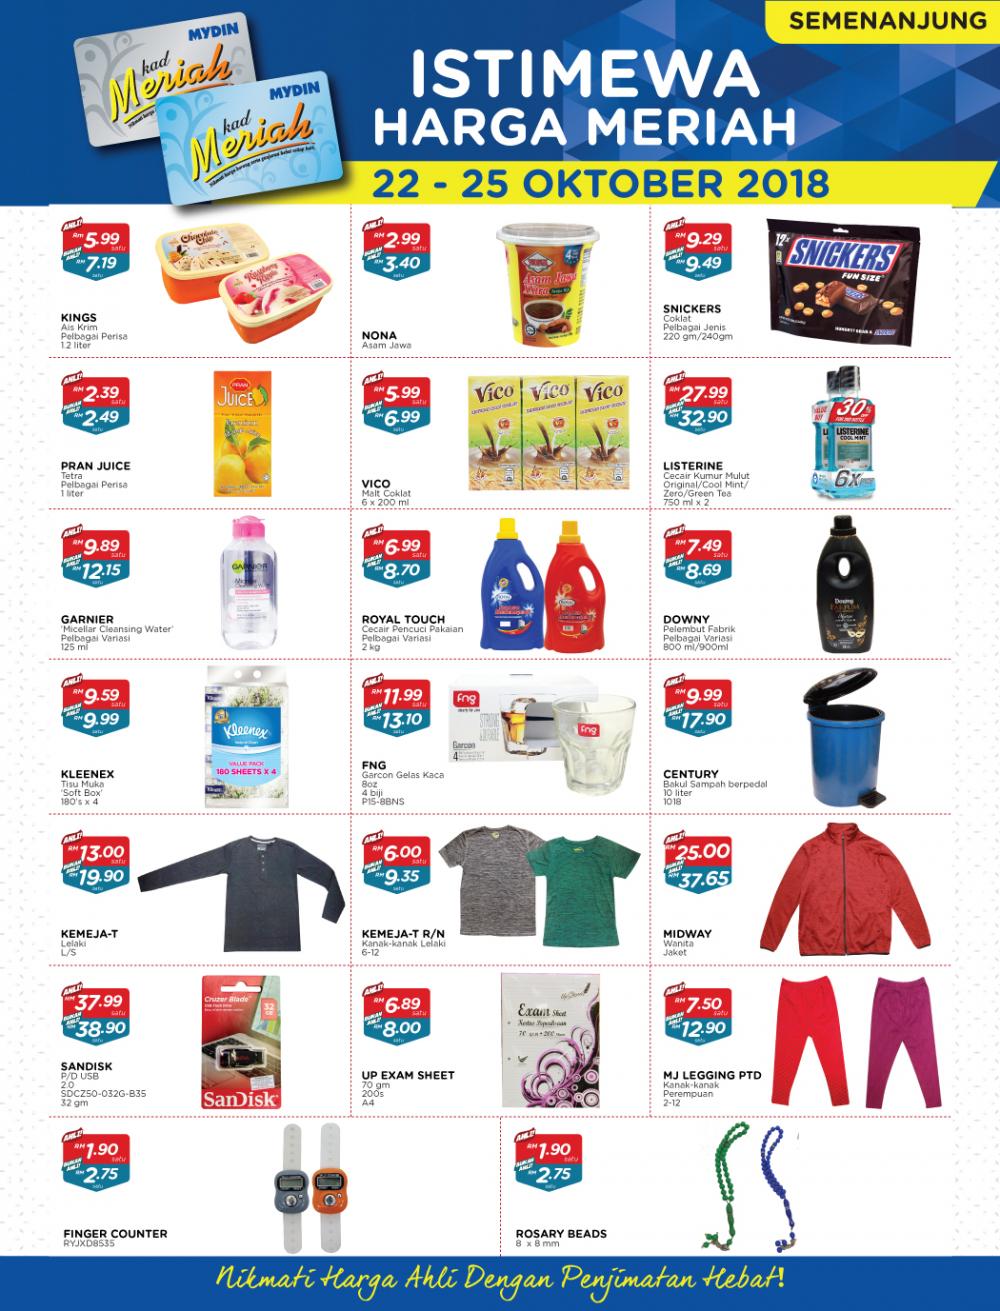 MYDIN Meriah Special Promotion (22 October 2018 - 25 October 2018)